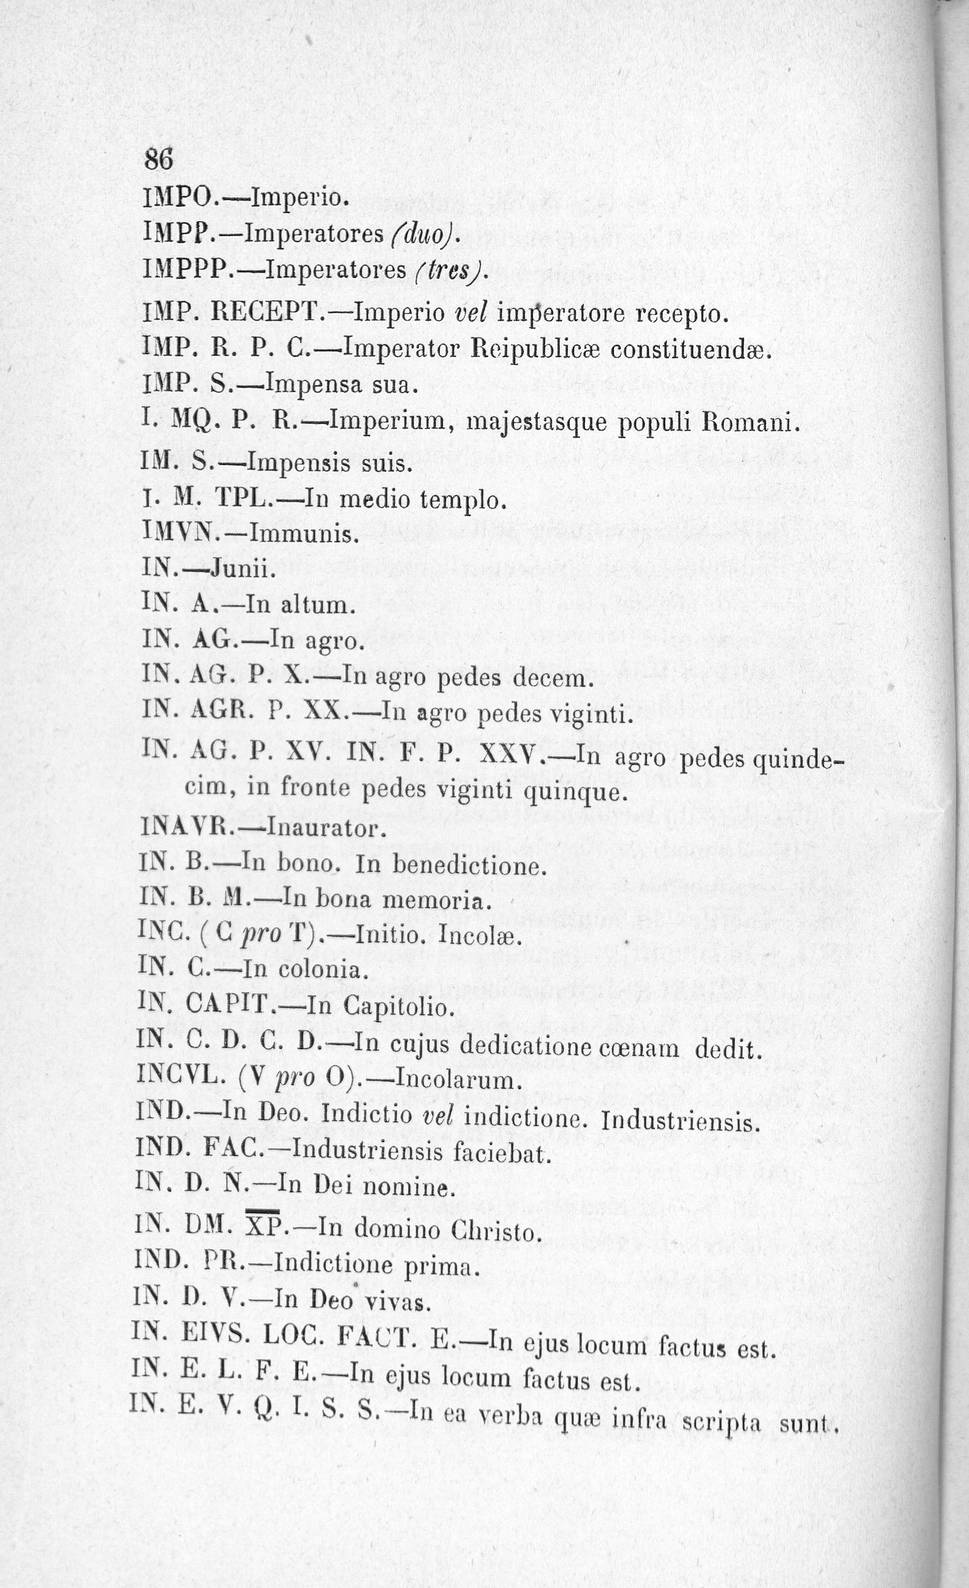 Biblioteca Digital de Castilla y León > Siglas y abreviaturas  latinas...seguidas del calendario romano y de un catálogo de las  abreviaturas que se usan en los documentos pontificios - Imágenes digitales